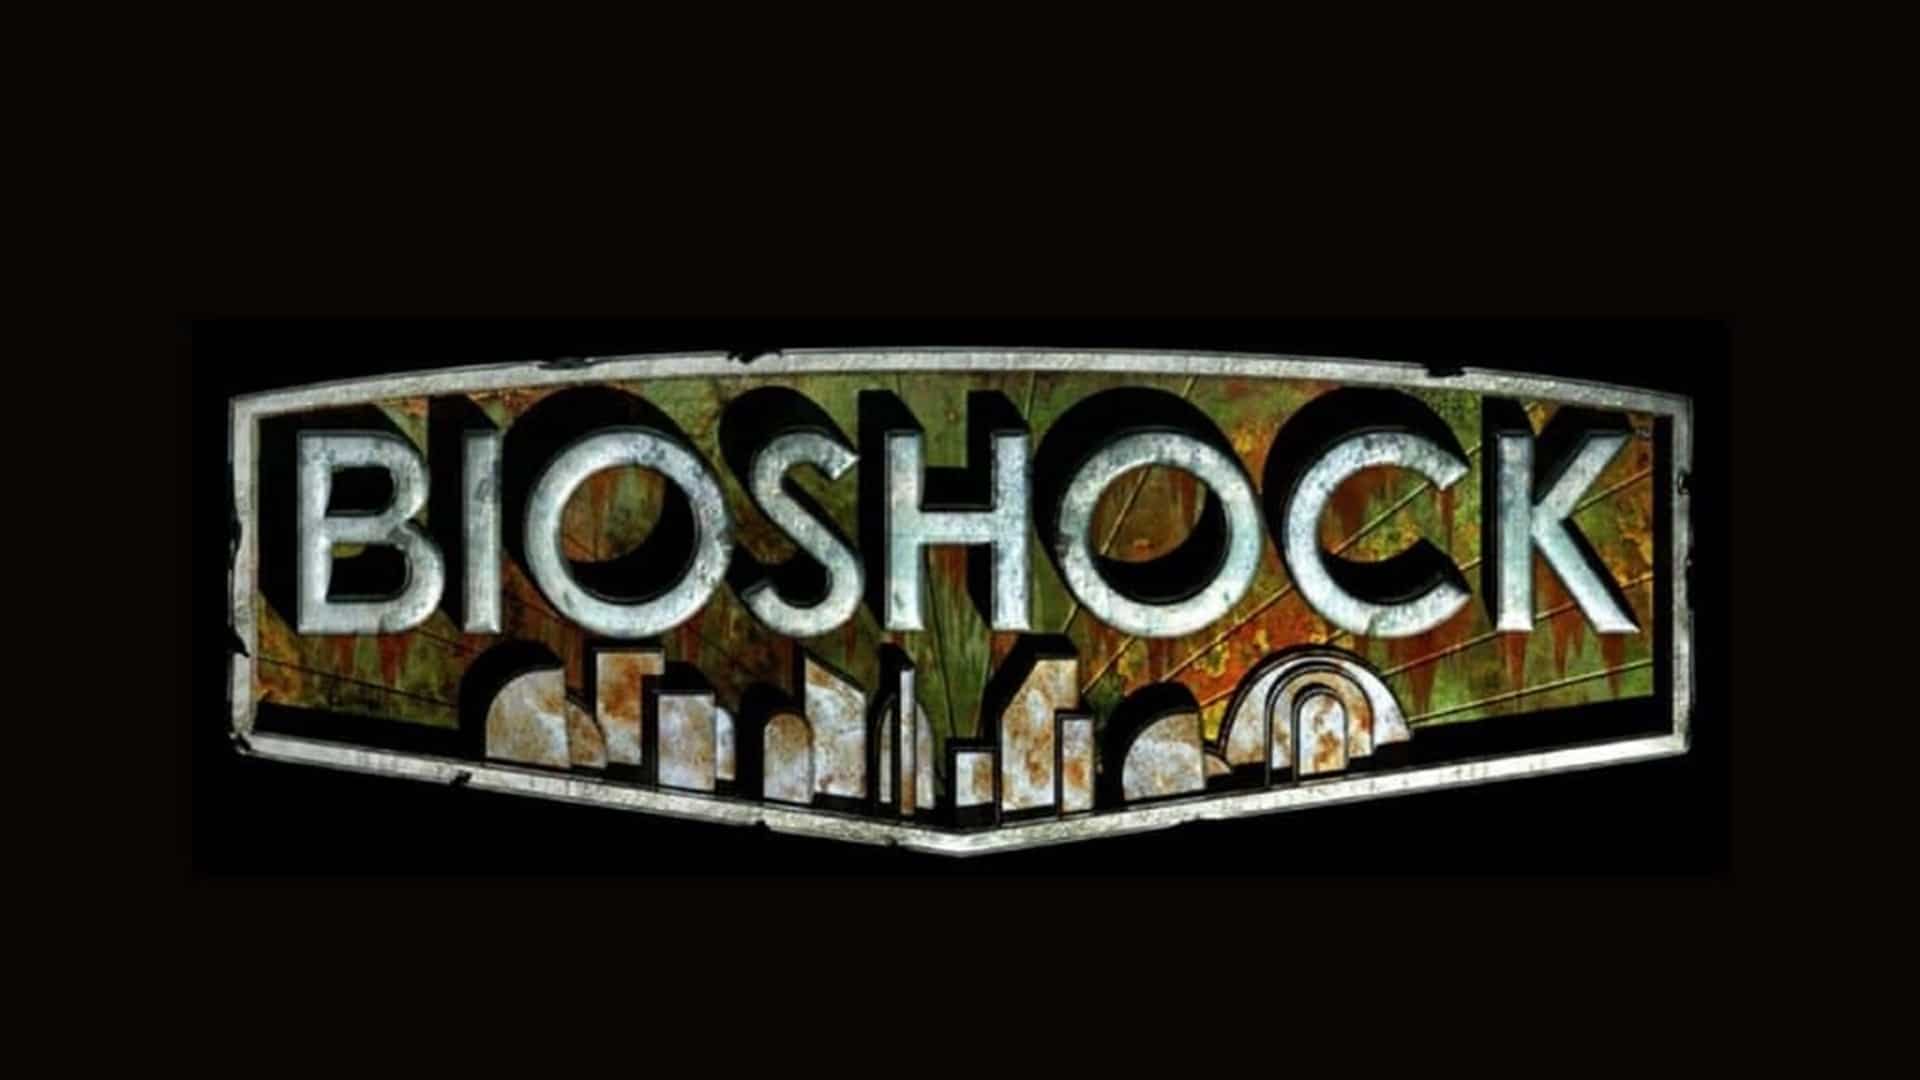 BioShock 4 está teniendo problemas de desarrollo y la revelación podría retrasarse, según filtrador, GamersRD